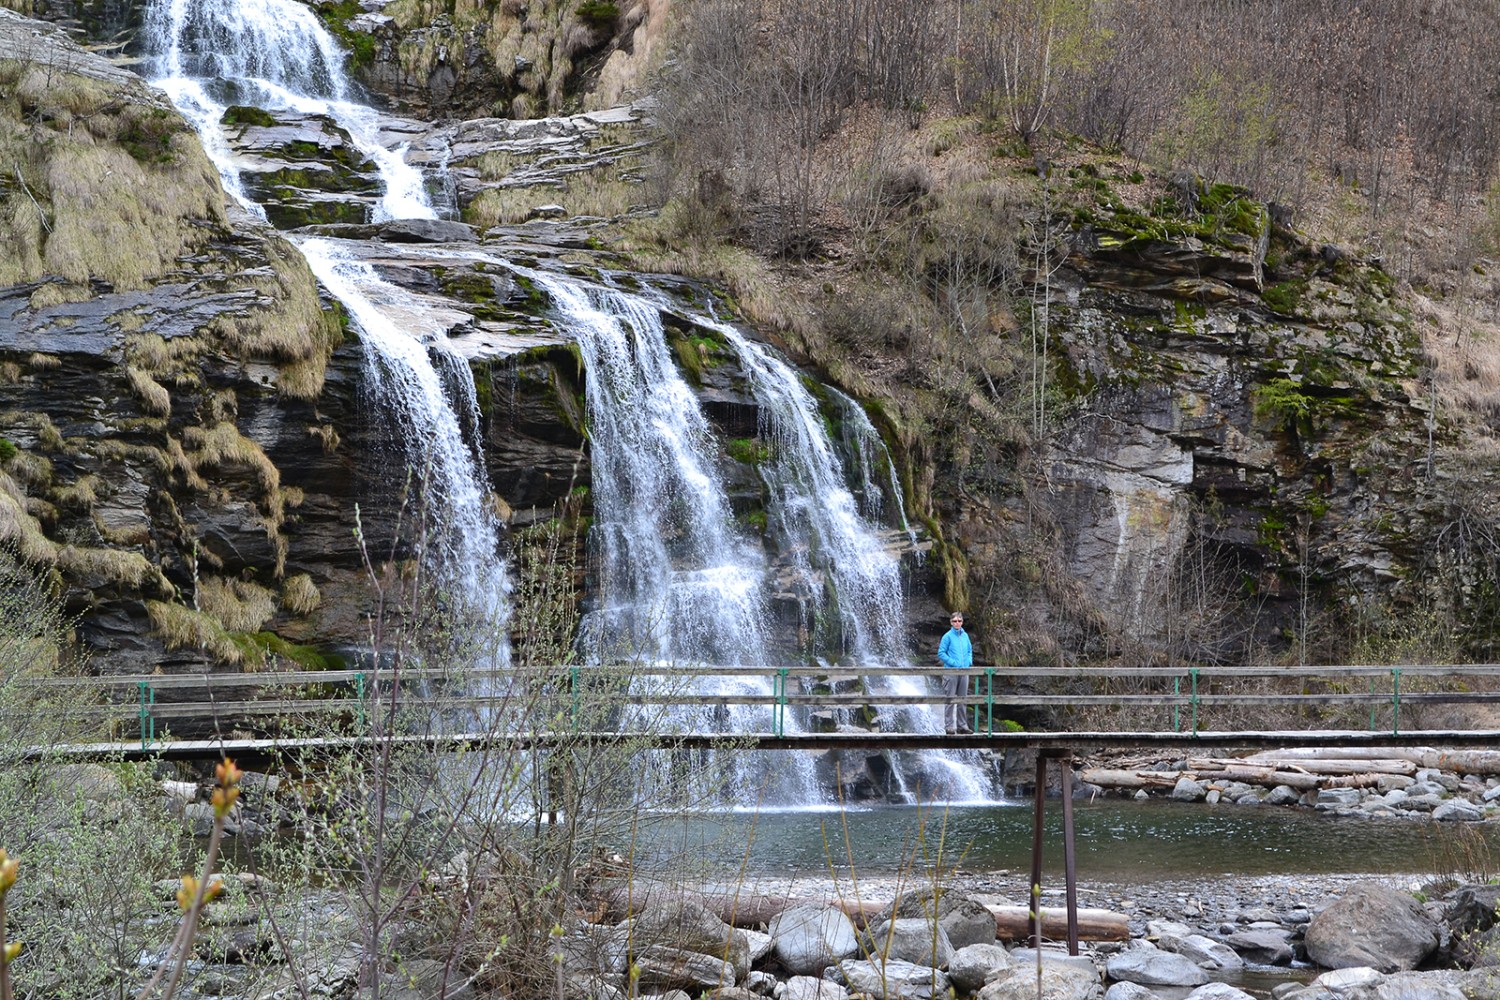 Vom Steg aus lassen sich die Wasserfälle der Cascata Piumogna am besten beobachten. Bilder: Sabine Joss